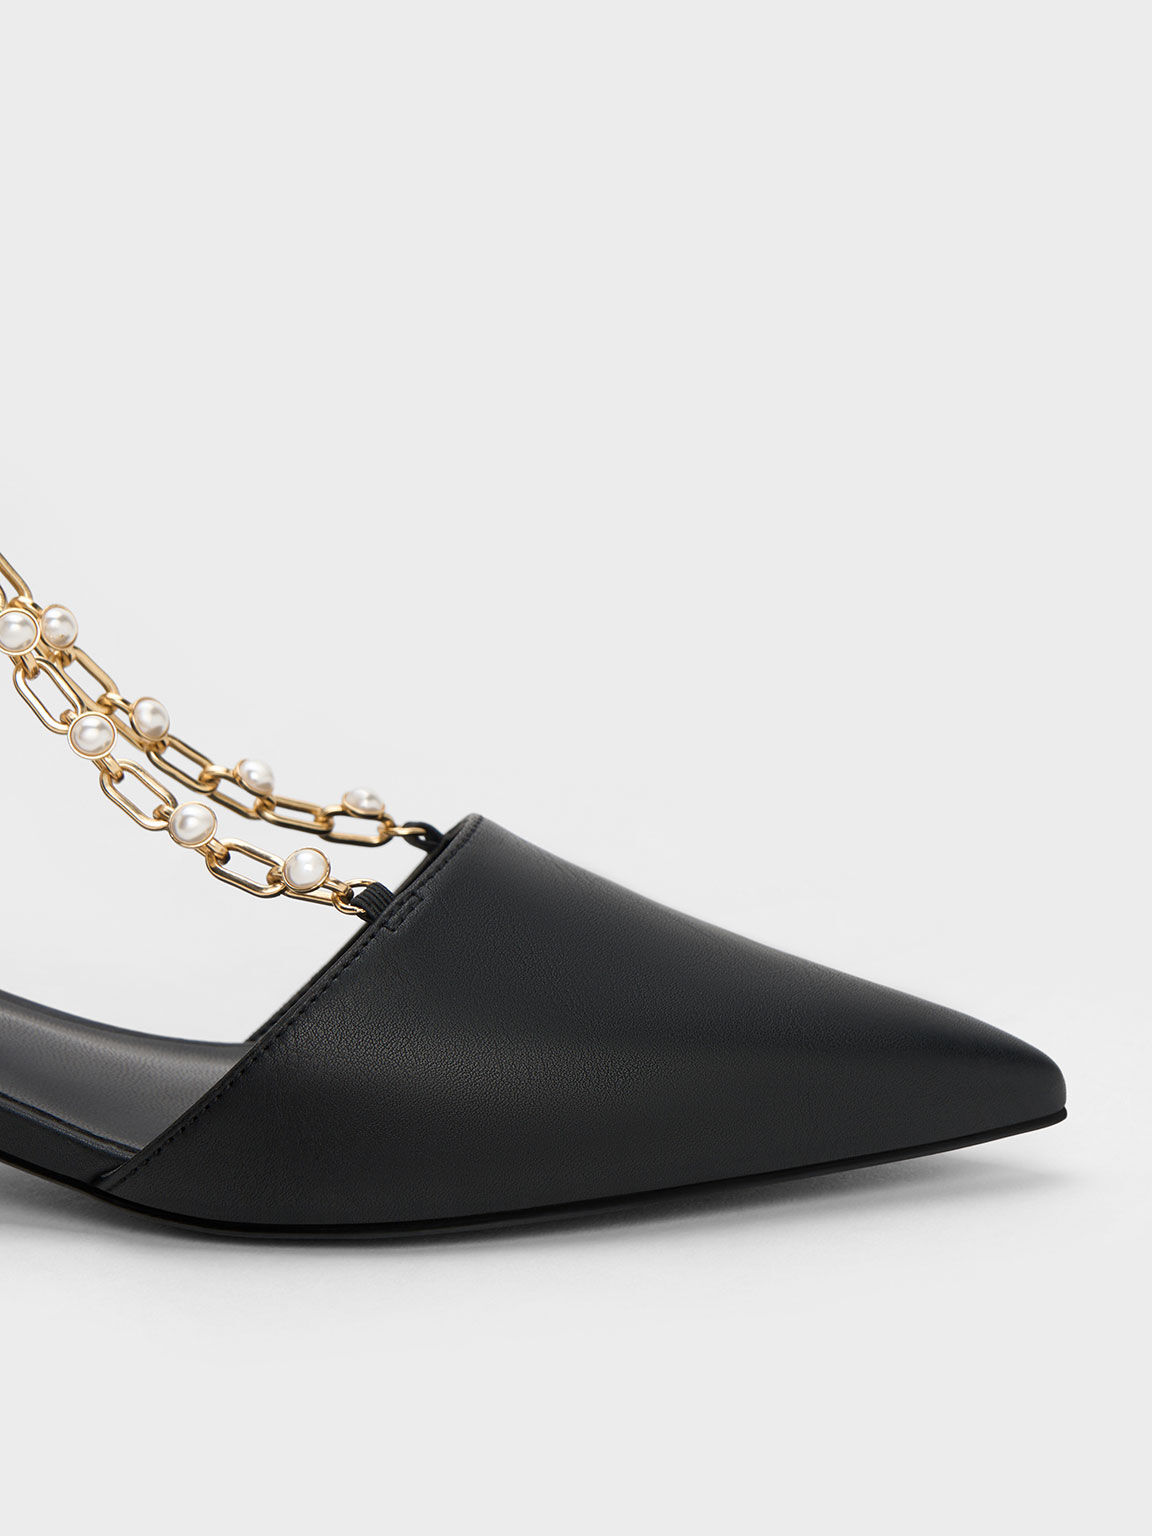 Zapatos de tacón D'Orsay con cadena metálica y cuentas, Negro, hi-res